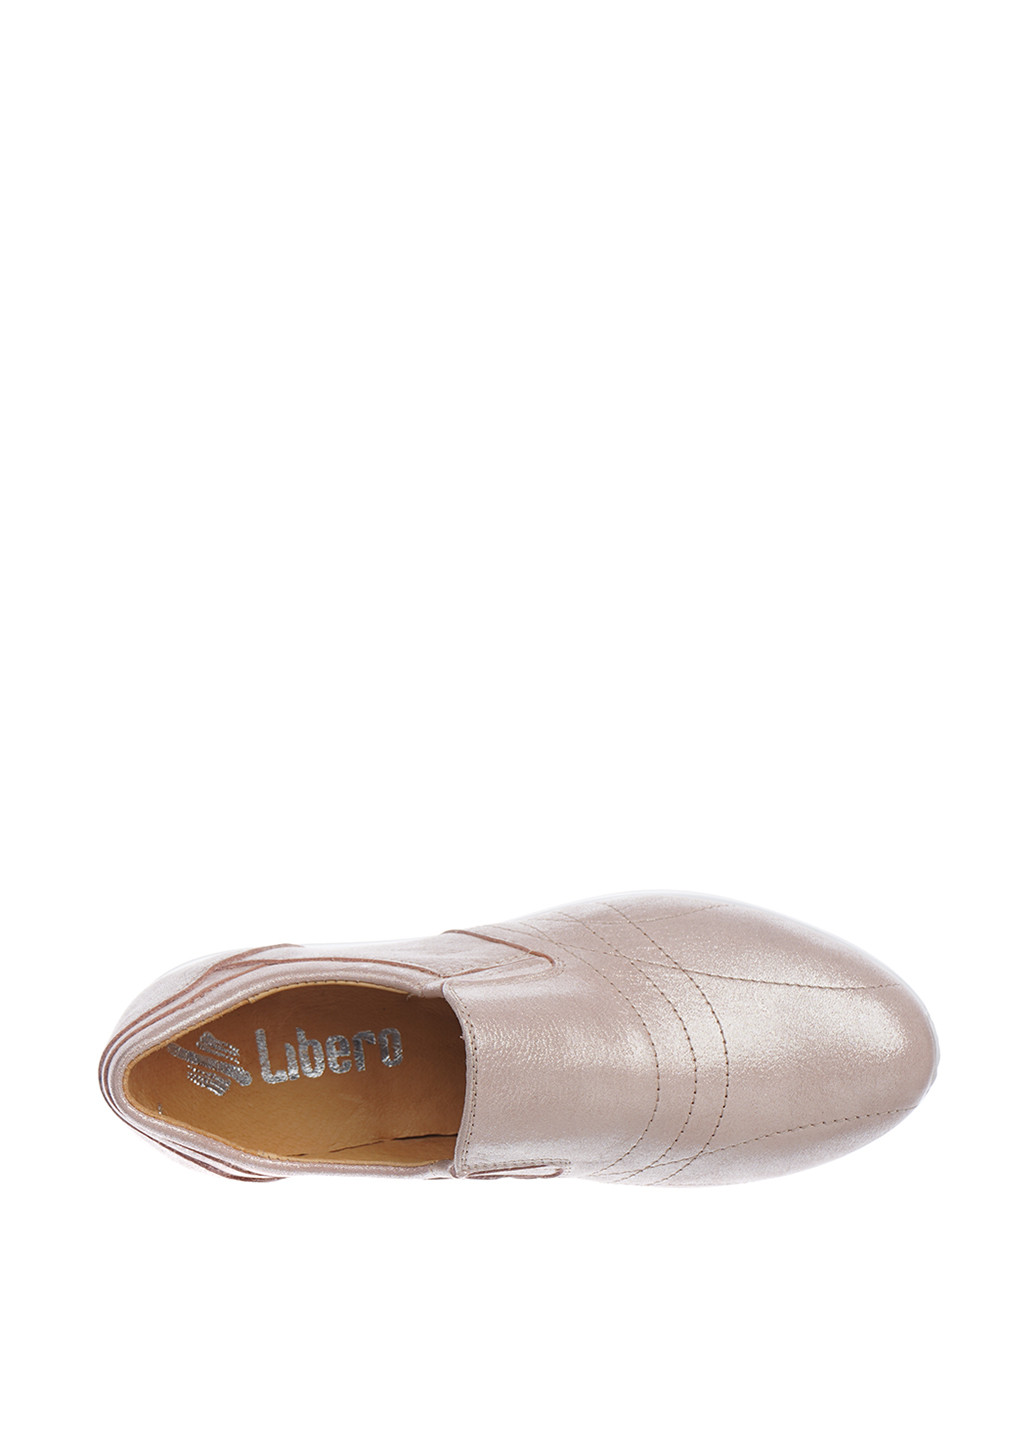 Светло-бежевые демисезонные кроссовки Libero